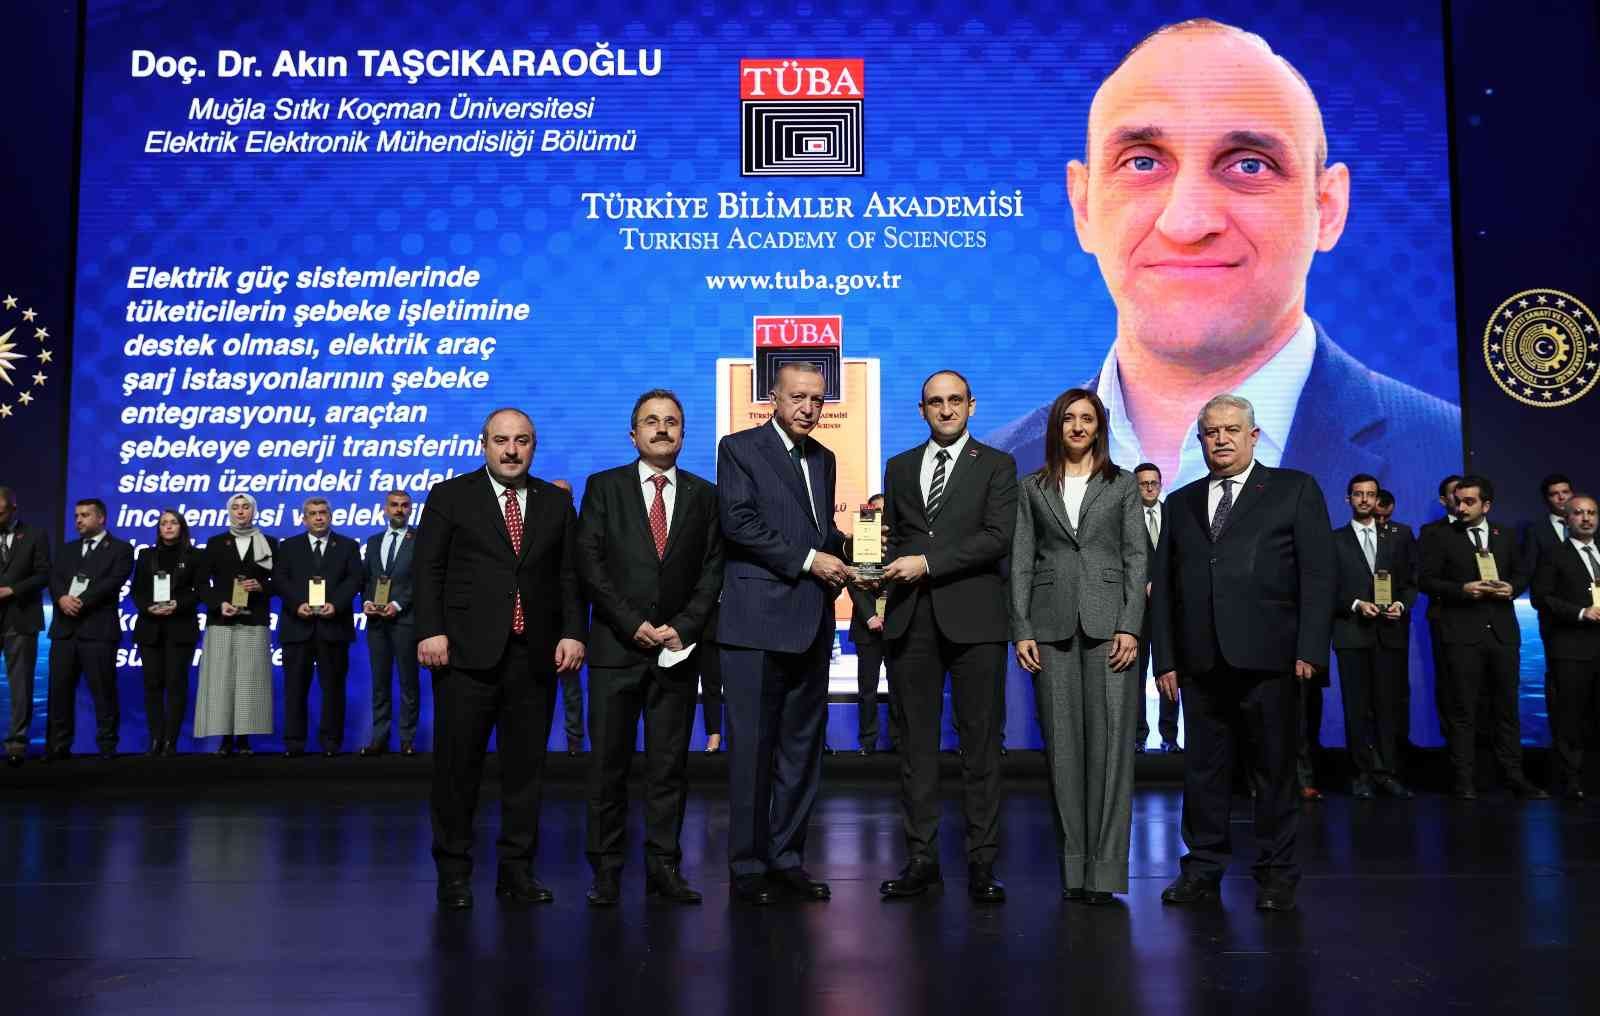 MSKÜ’lü Akademisyen ‘TÜBA Bilim Ödülü’nü Cumhurbaşkanı Erdoğan’dan aldı #mugla